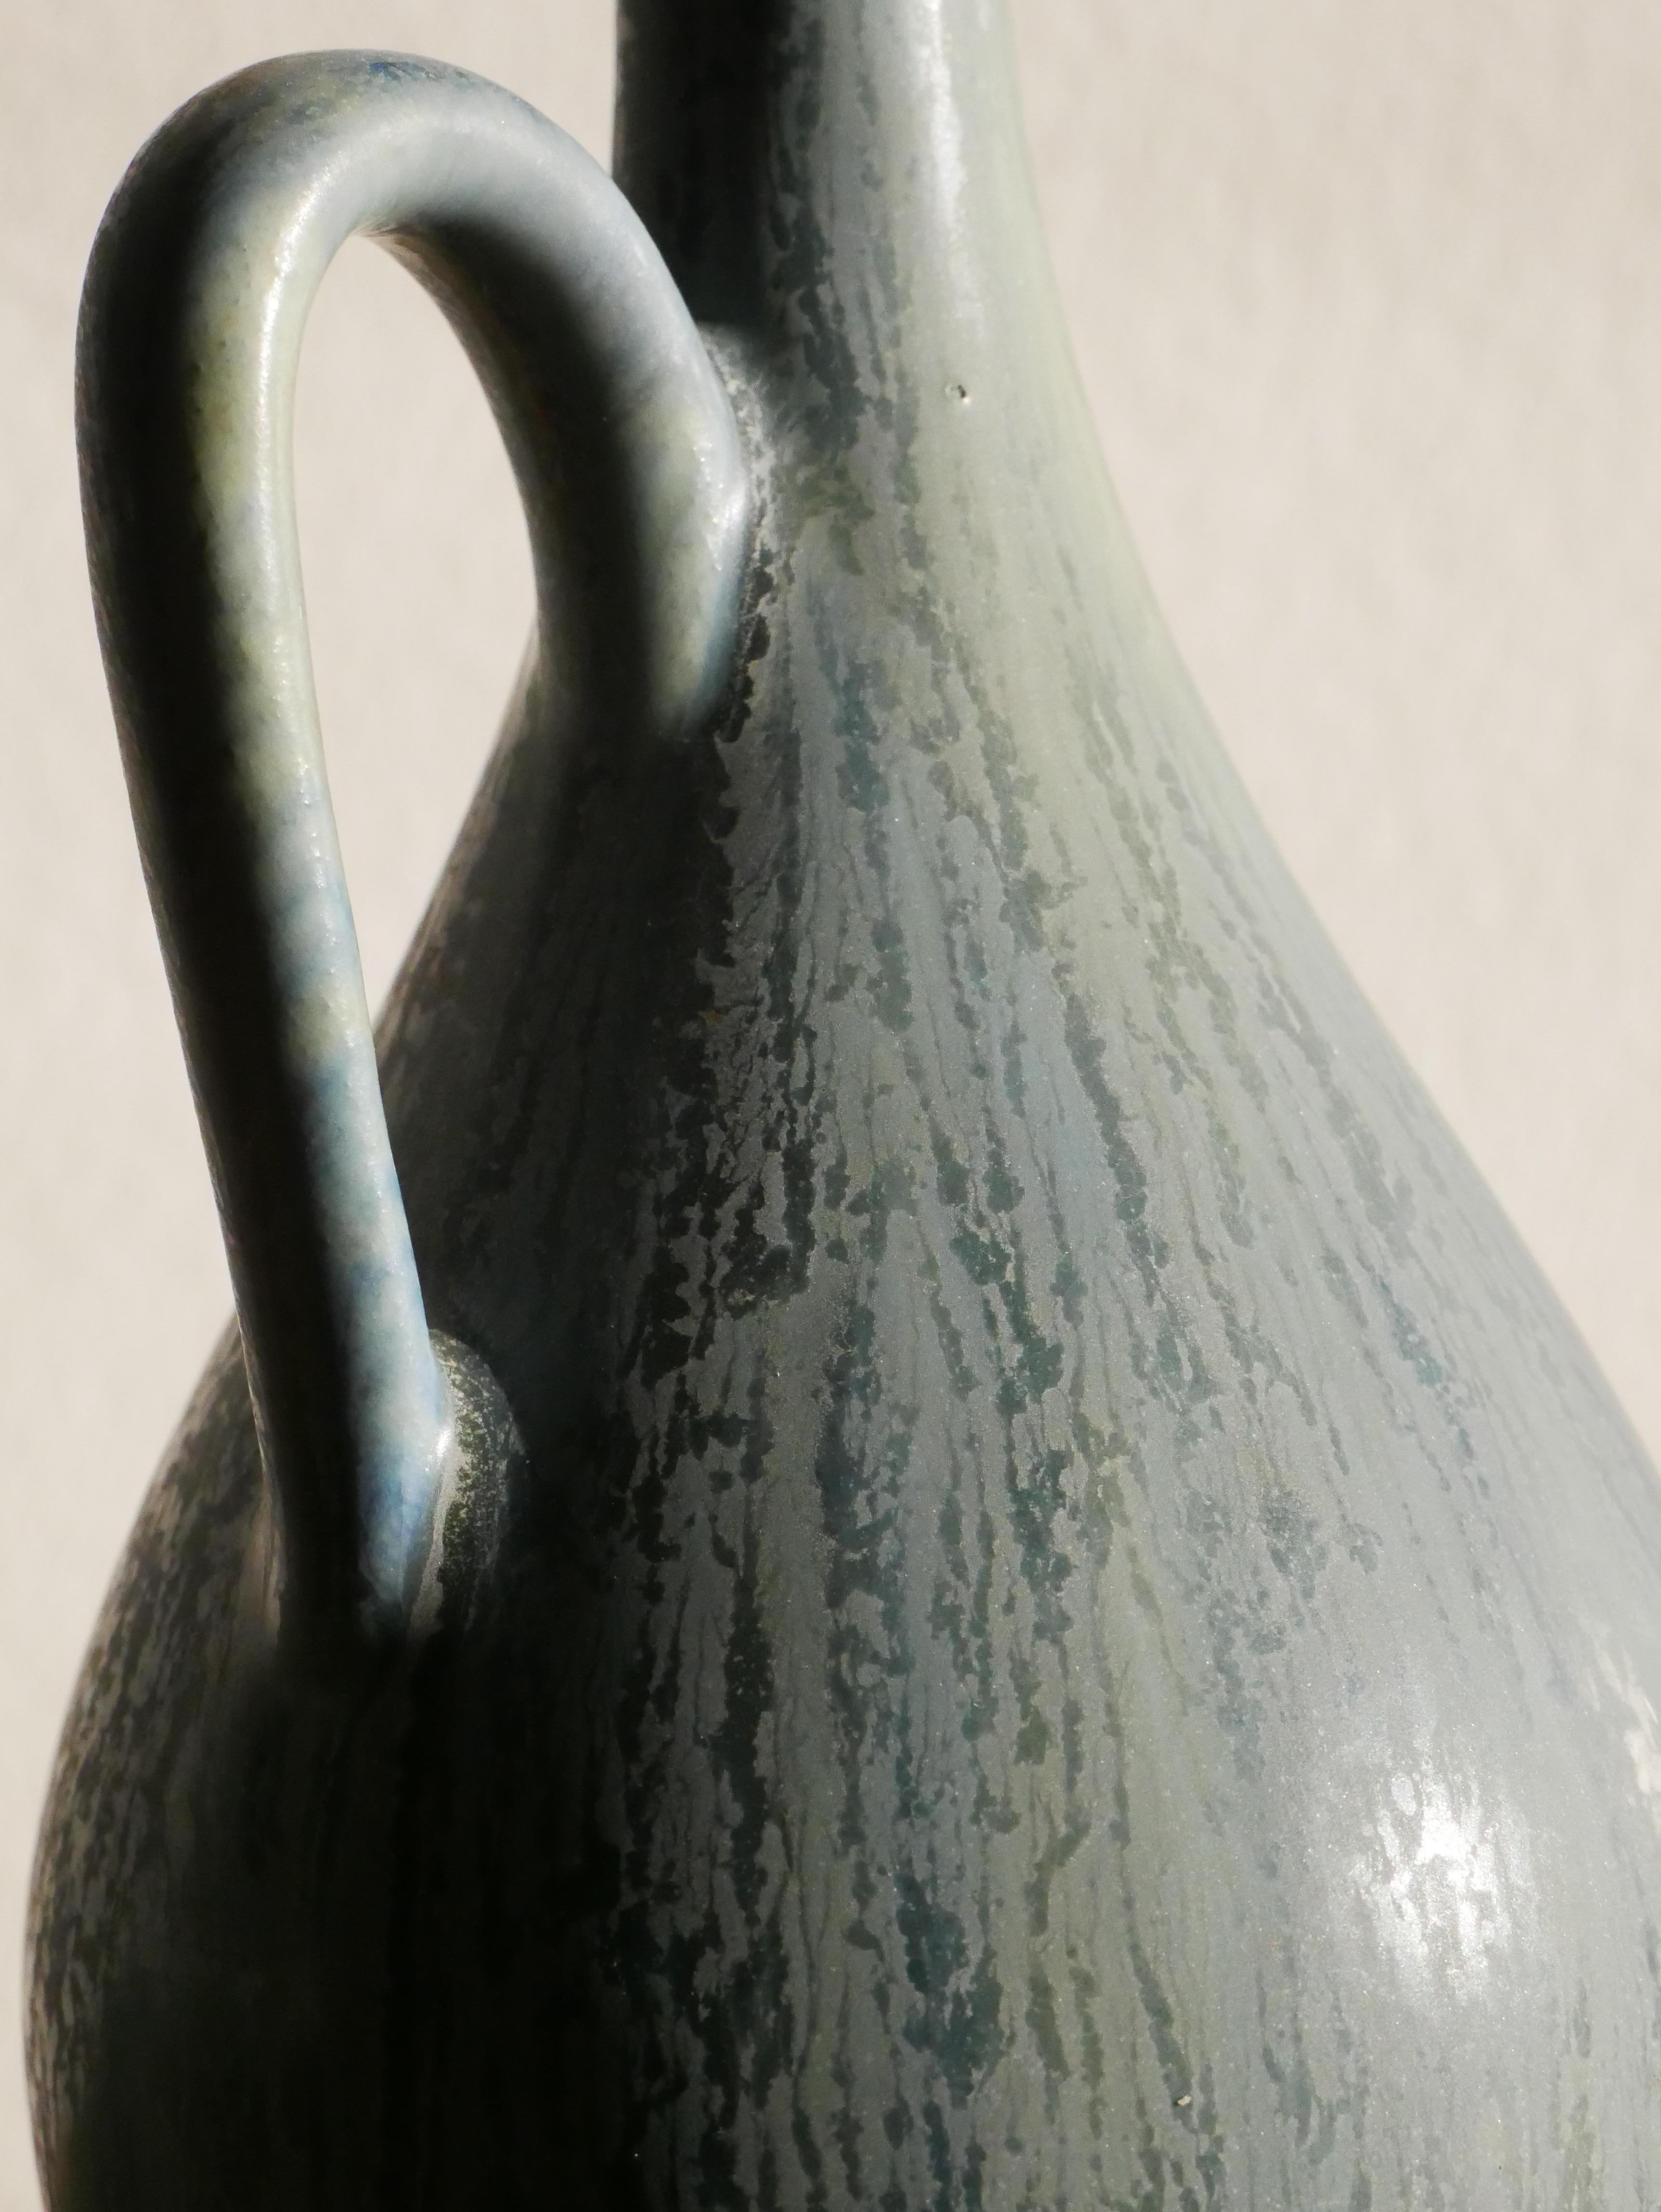 Hand-Carved Carl-Harry Stålhane Vase for Rörstrand 1950s Sweden